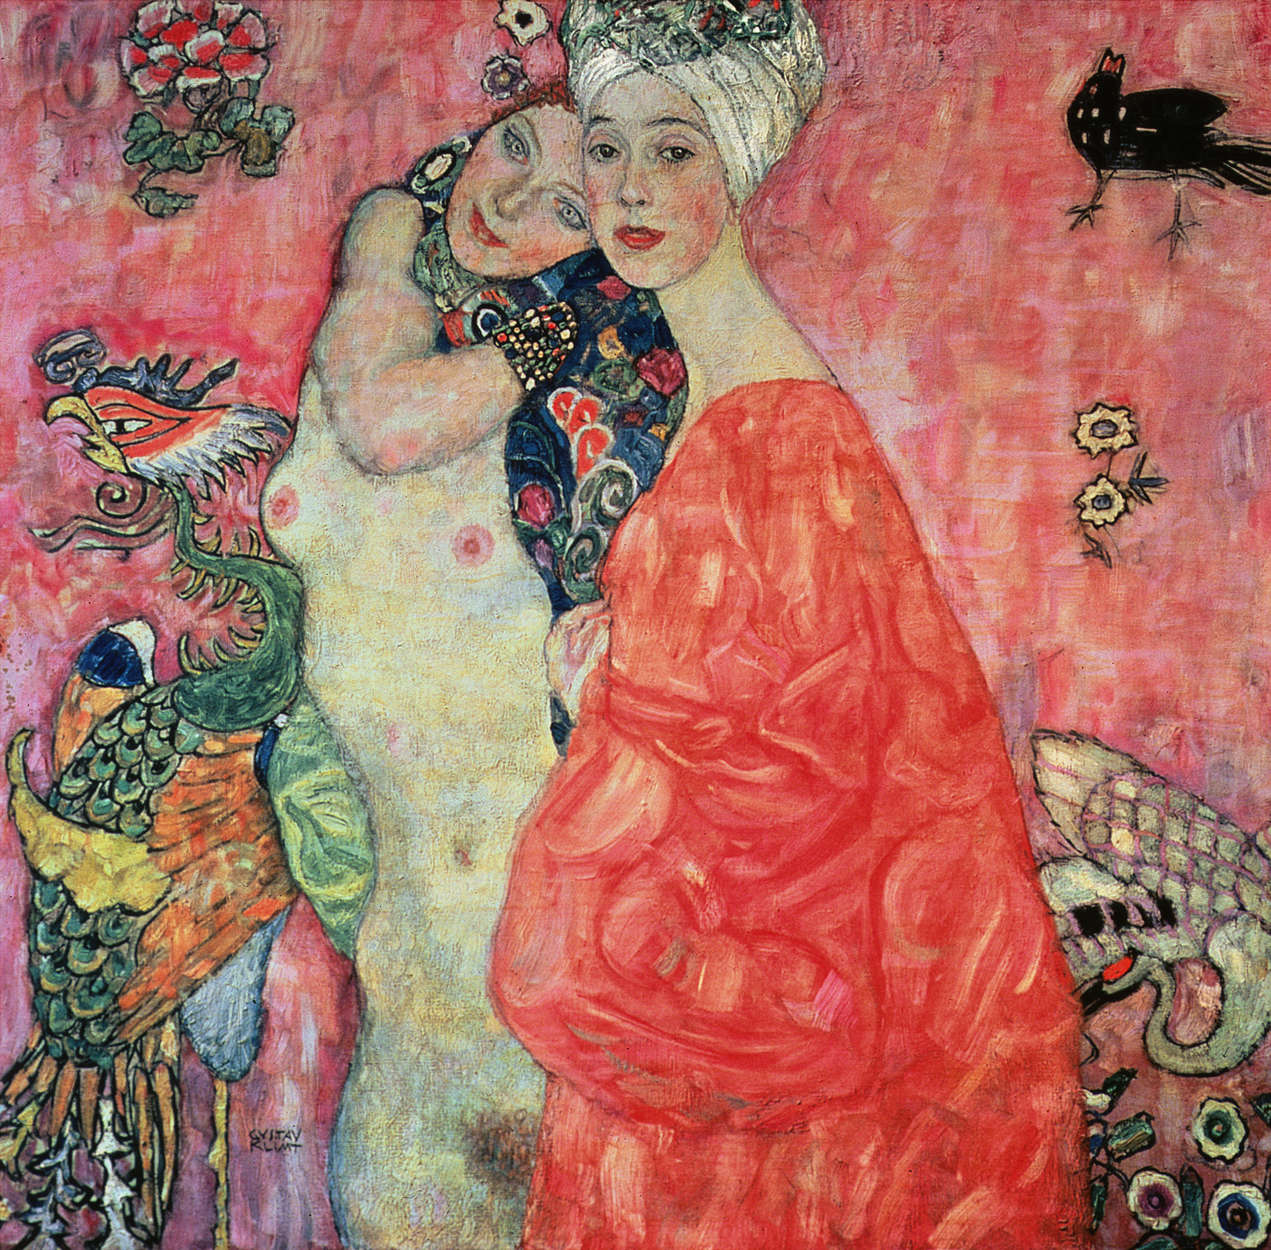             Il murale "Le fidanzate" di Gustav Klimt
        